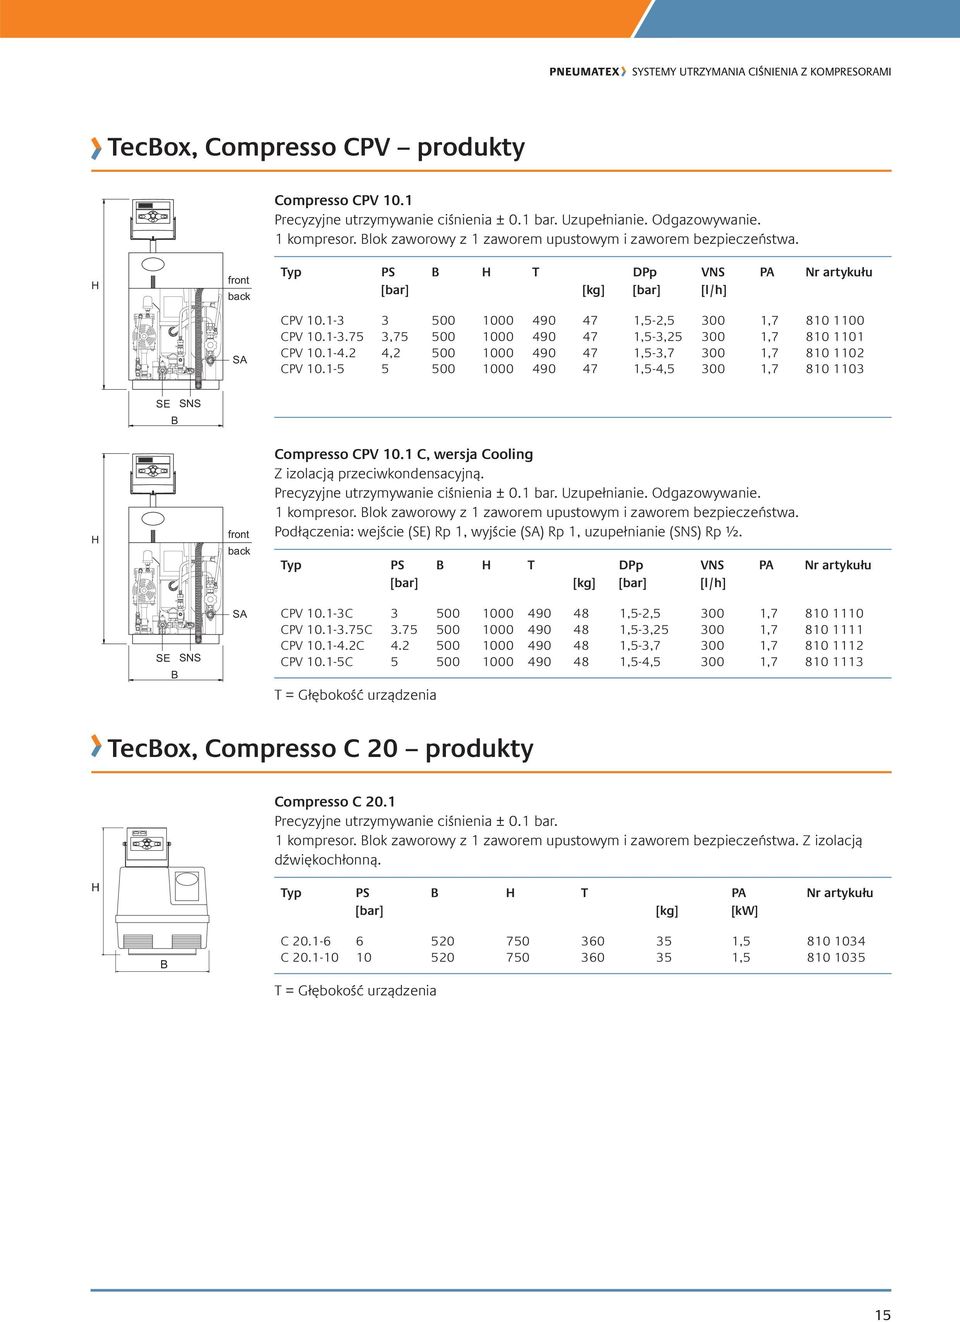 1-4.2 4,2 500 1000 490 47 1,5-3,7 300 1,7 810 1102 CPV 10.1-5 5 500 1000 490 47 1,5-4,5 300 1,7 810 1103 SE B SNS H front back Compresso CPV 10.1 C, wersja Cooling Z izolacją przeciwkondensacyjną.